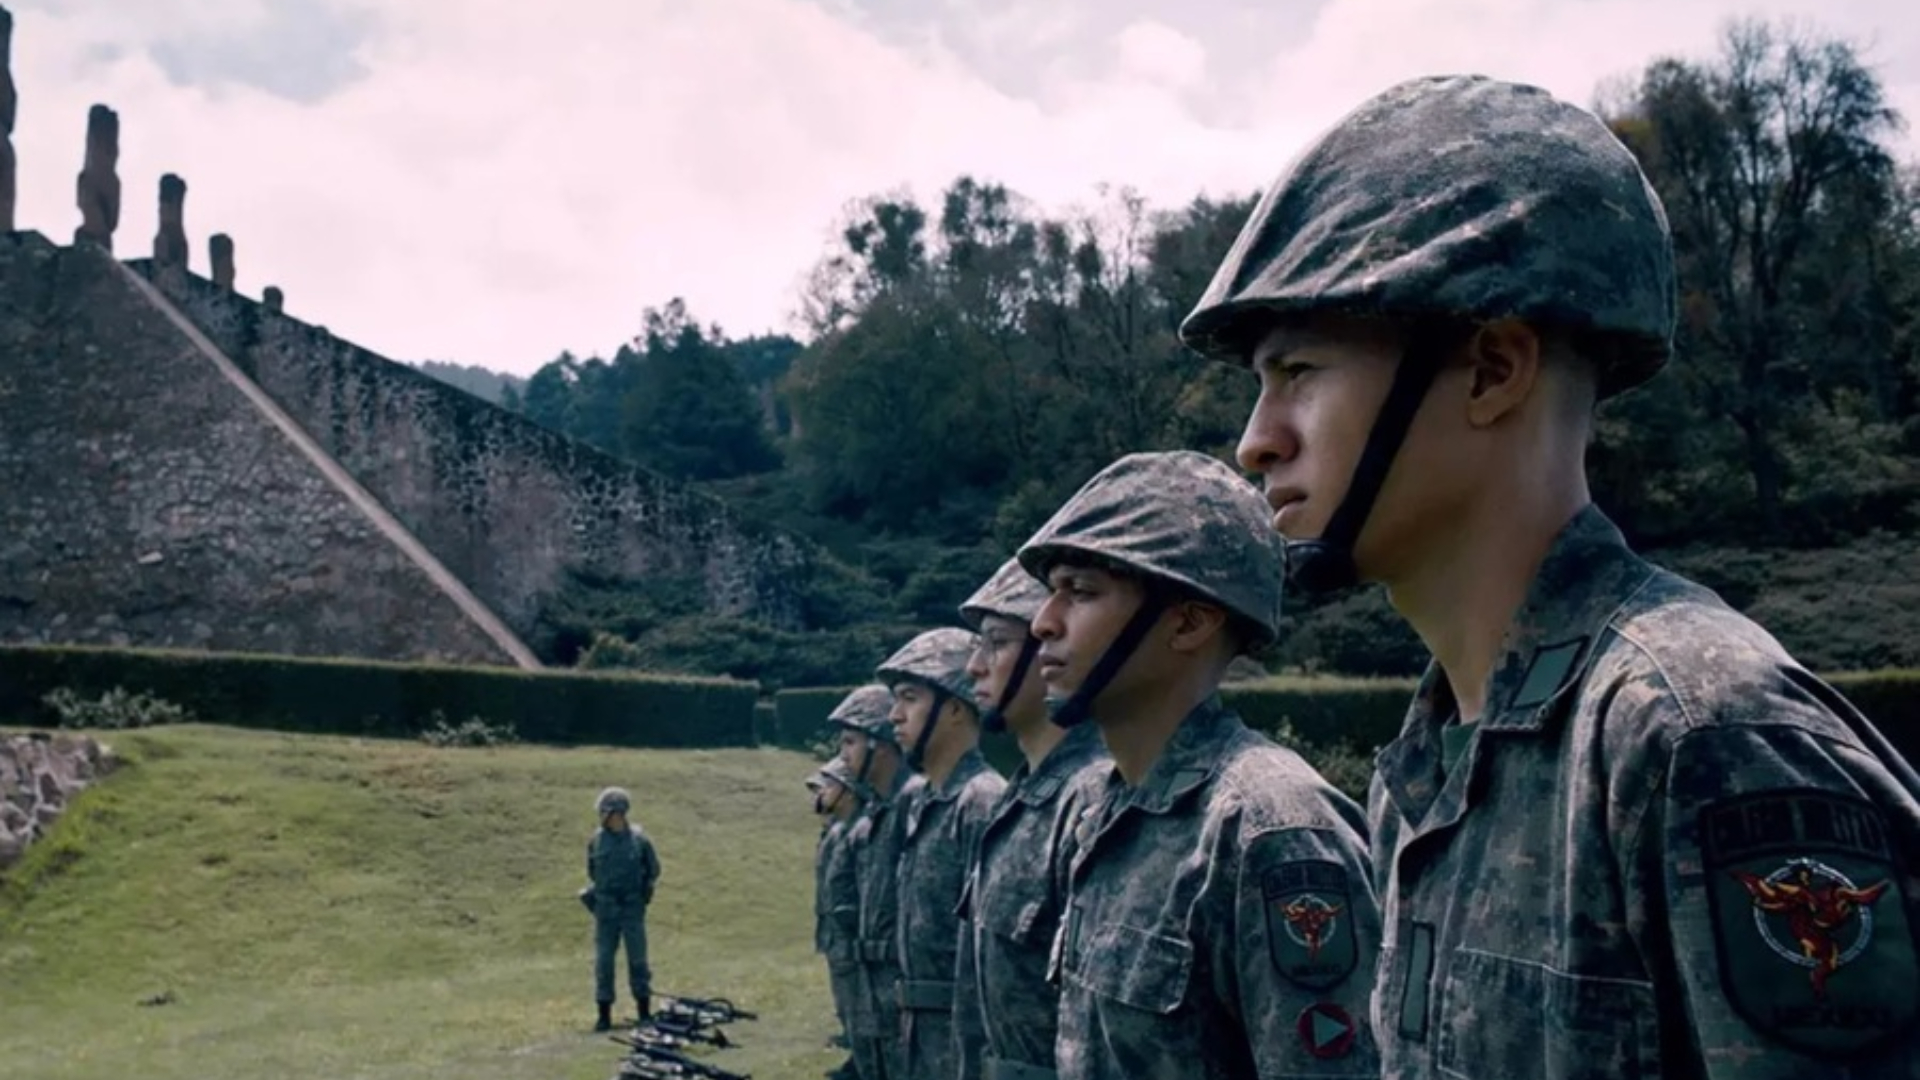 Heroico película mexicana sobre el ejército mexicano 